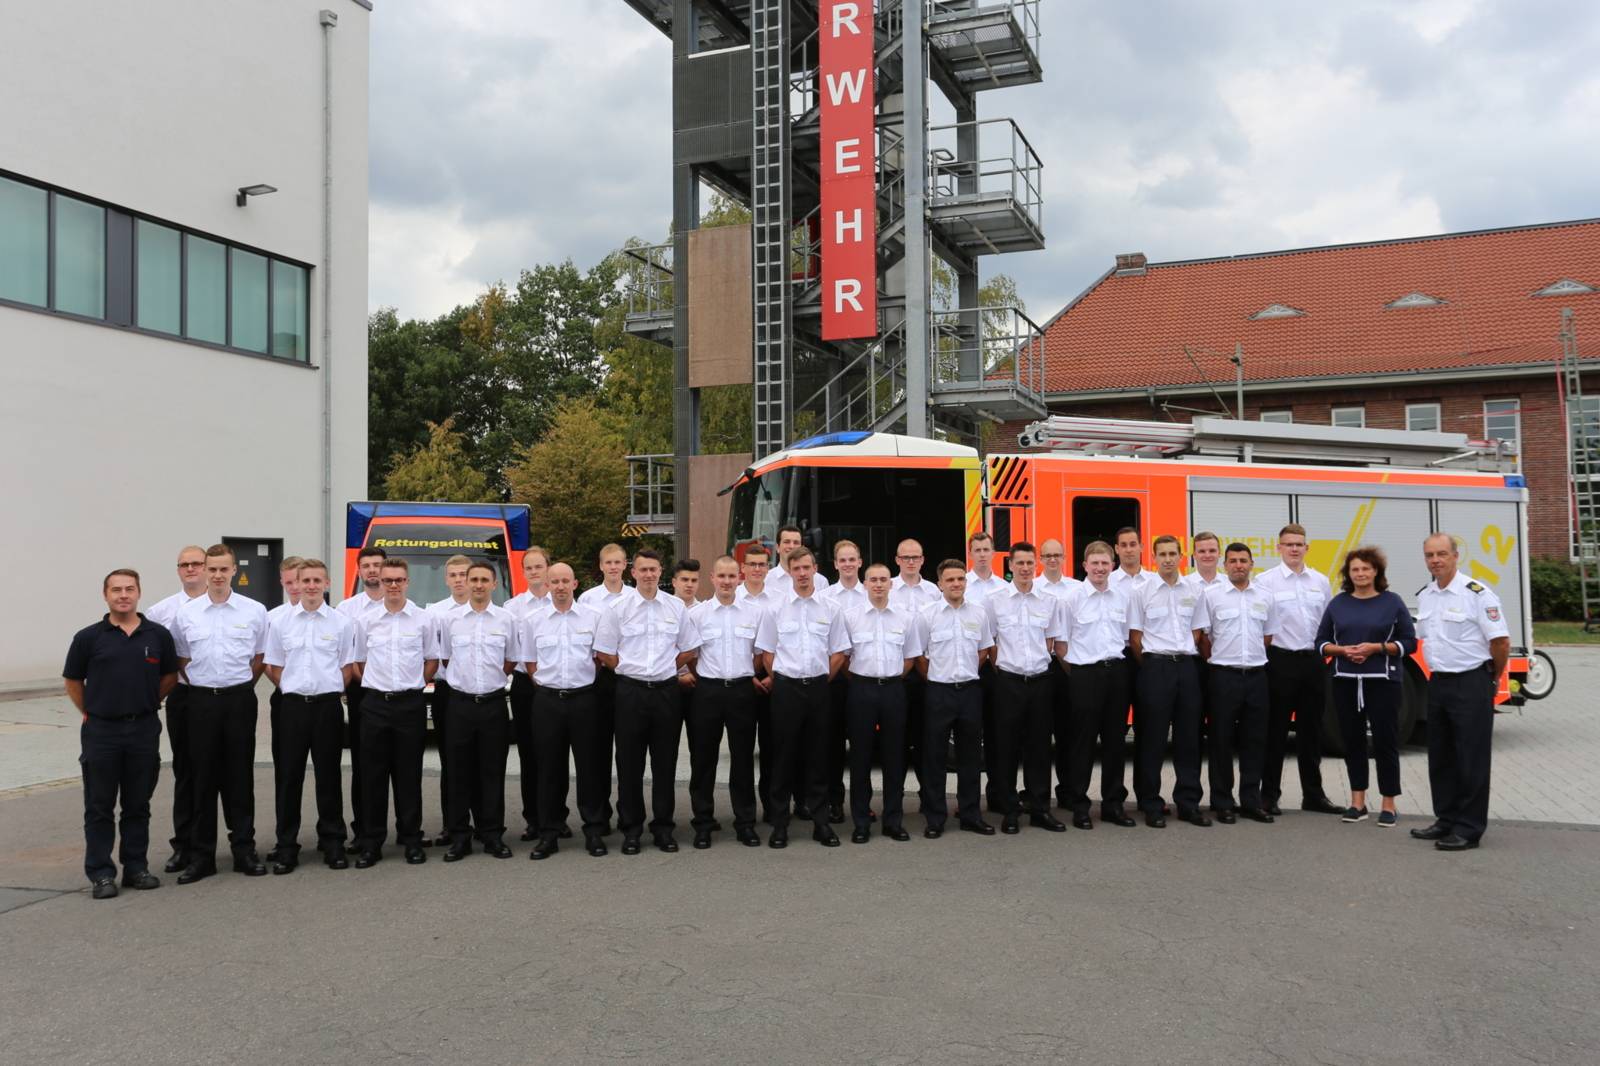 Nachwuchskräfte 2019 starten Ihre Karriere bei der Feuerwehr Hannover